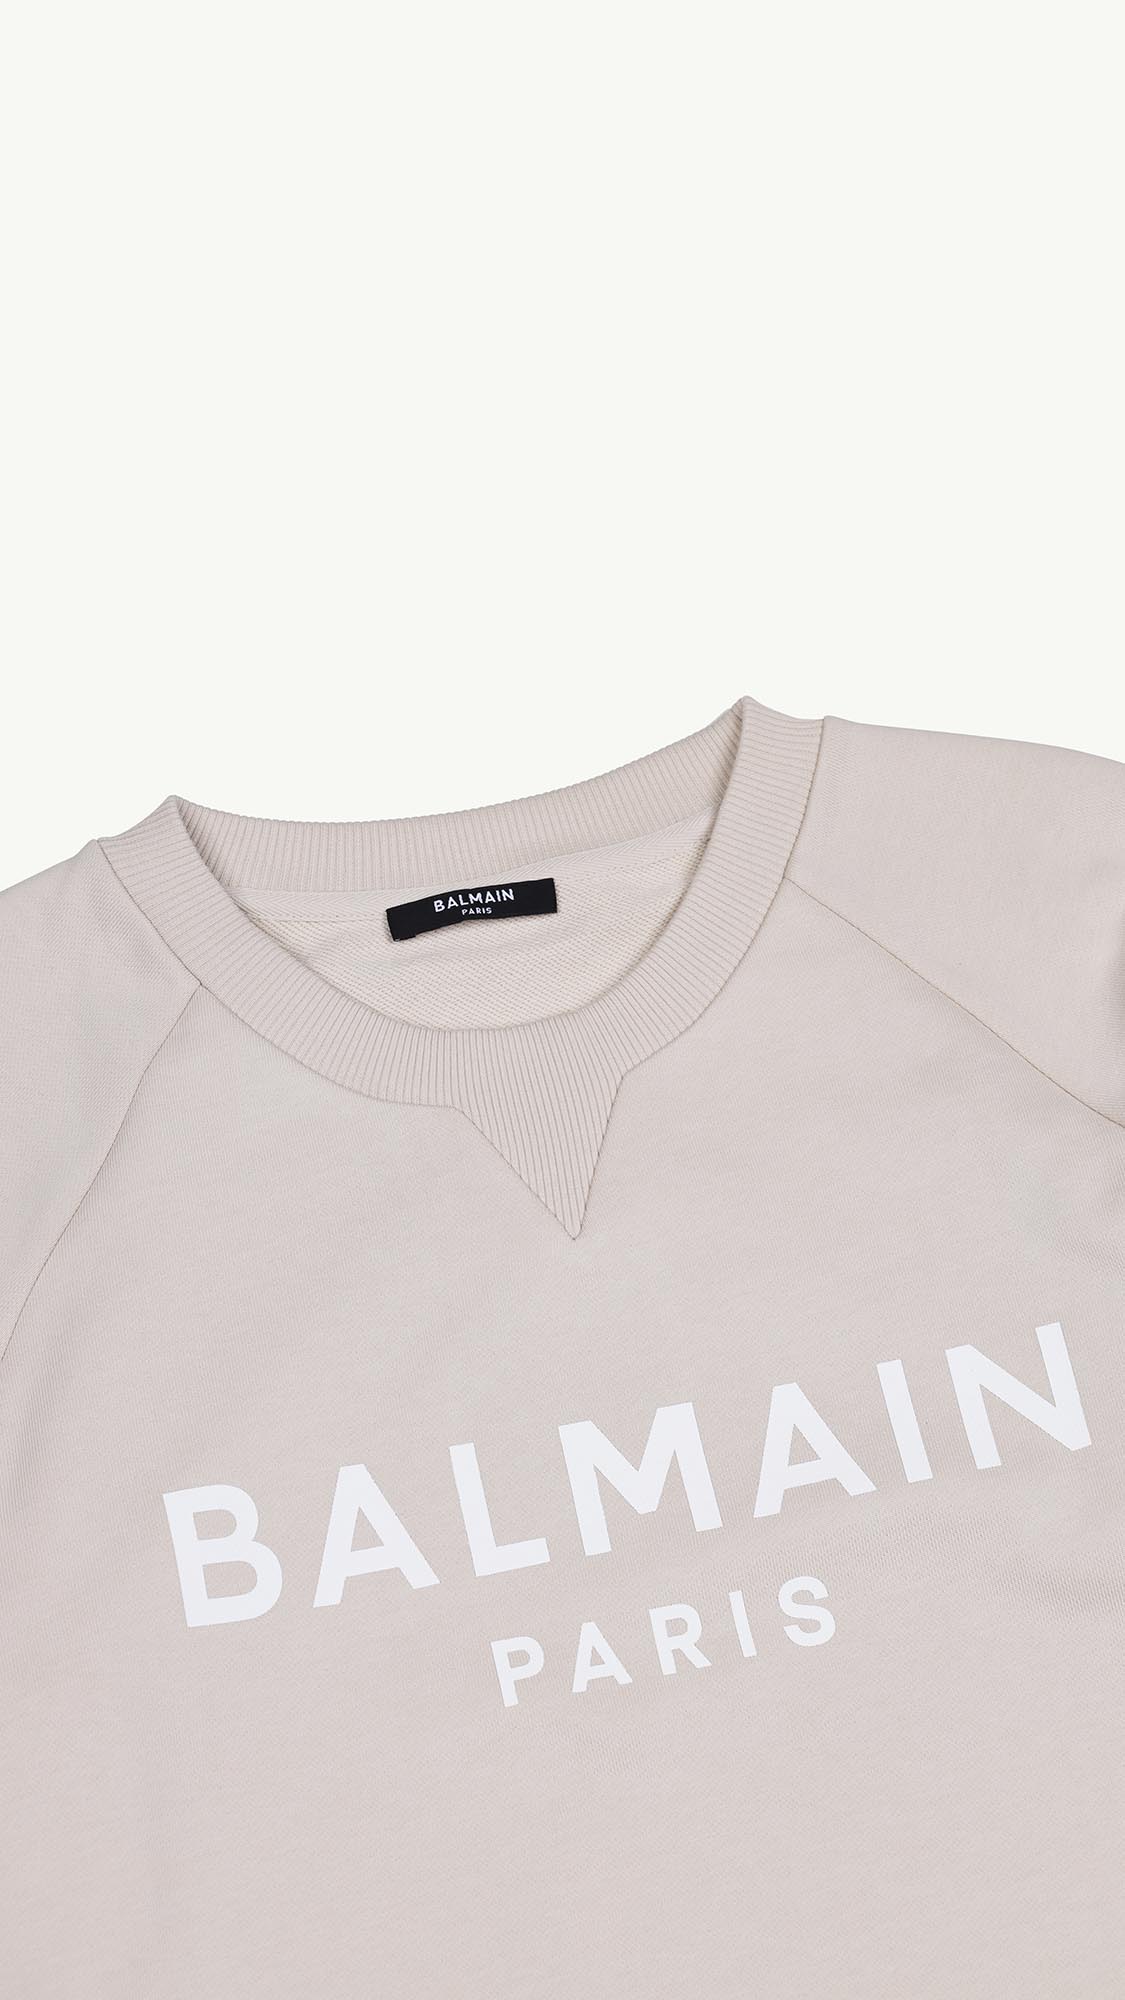 BALMAIN Women Balmain Paris Flocked Logo Sweatshirt in Beige/White 2